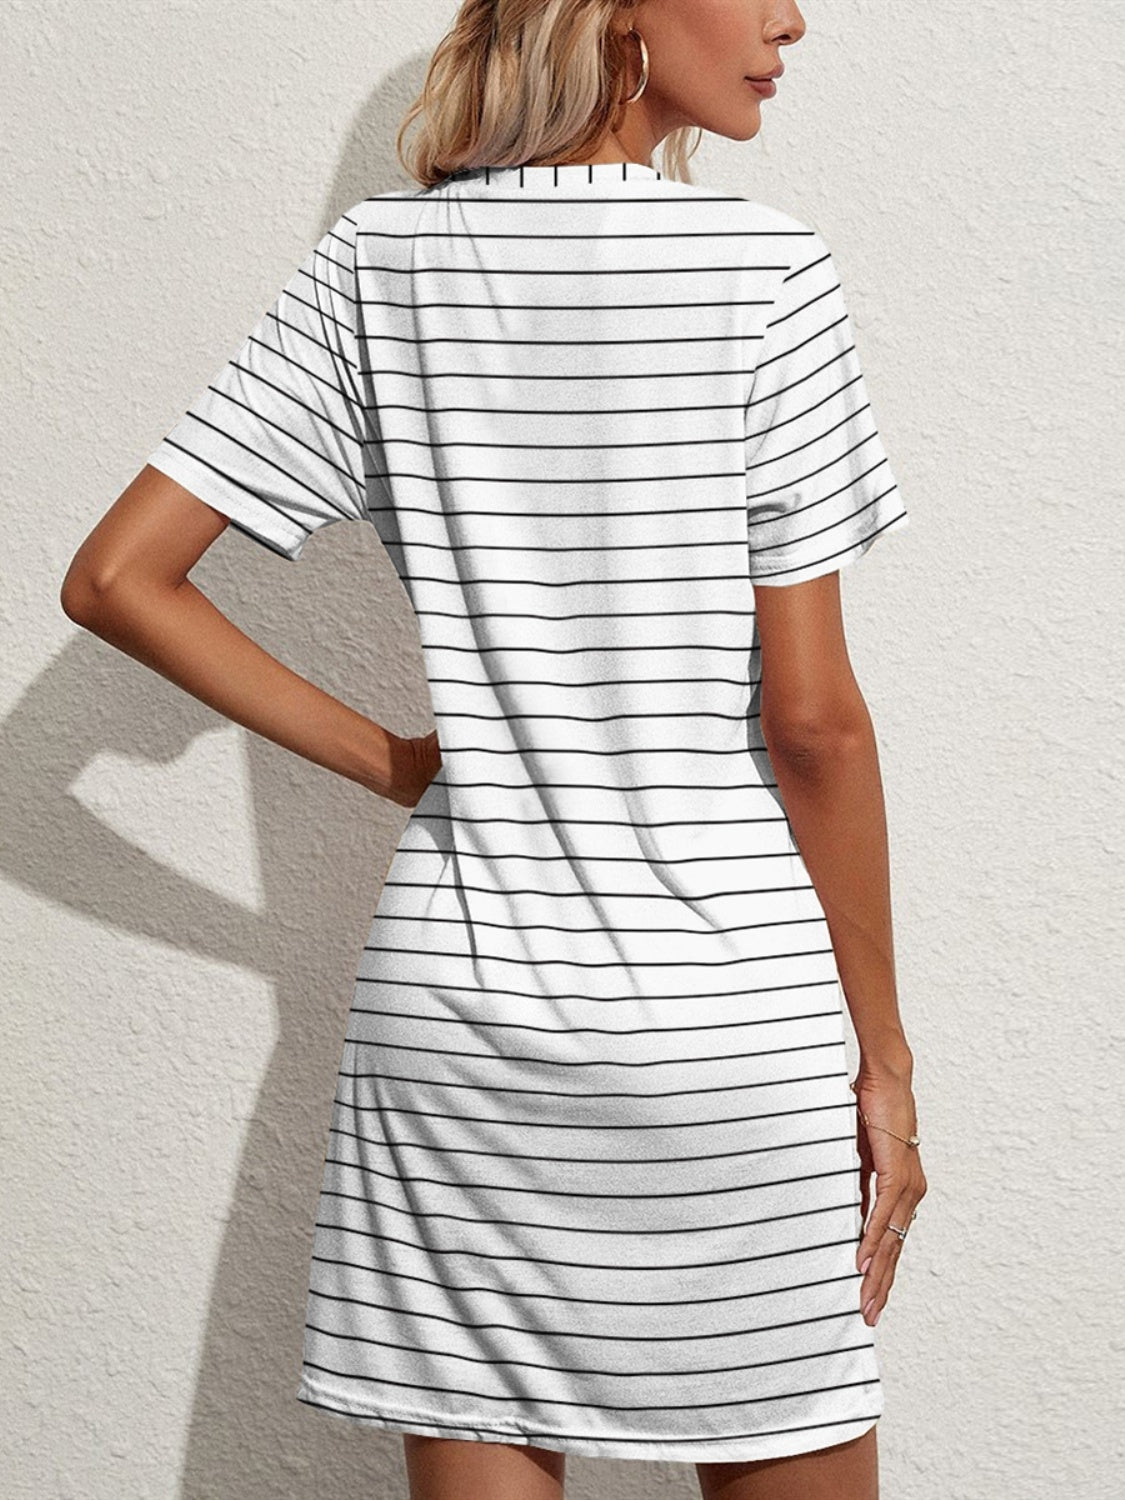 Pocketed Striped Tshirt Dress